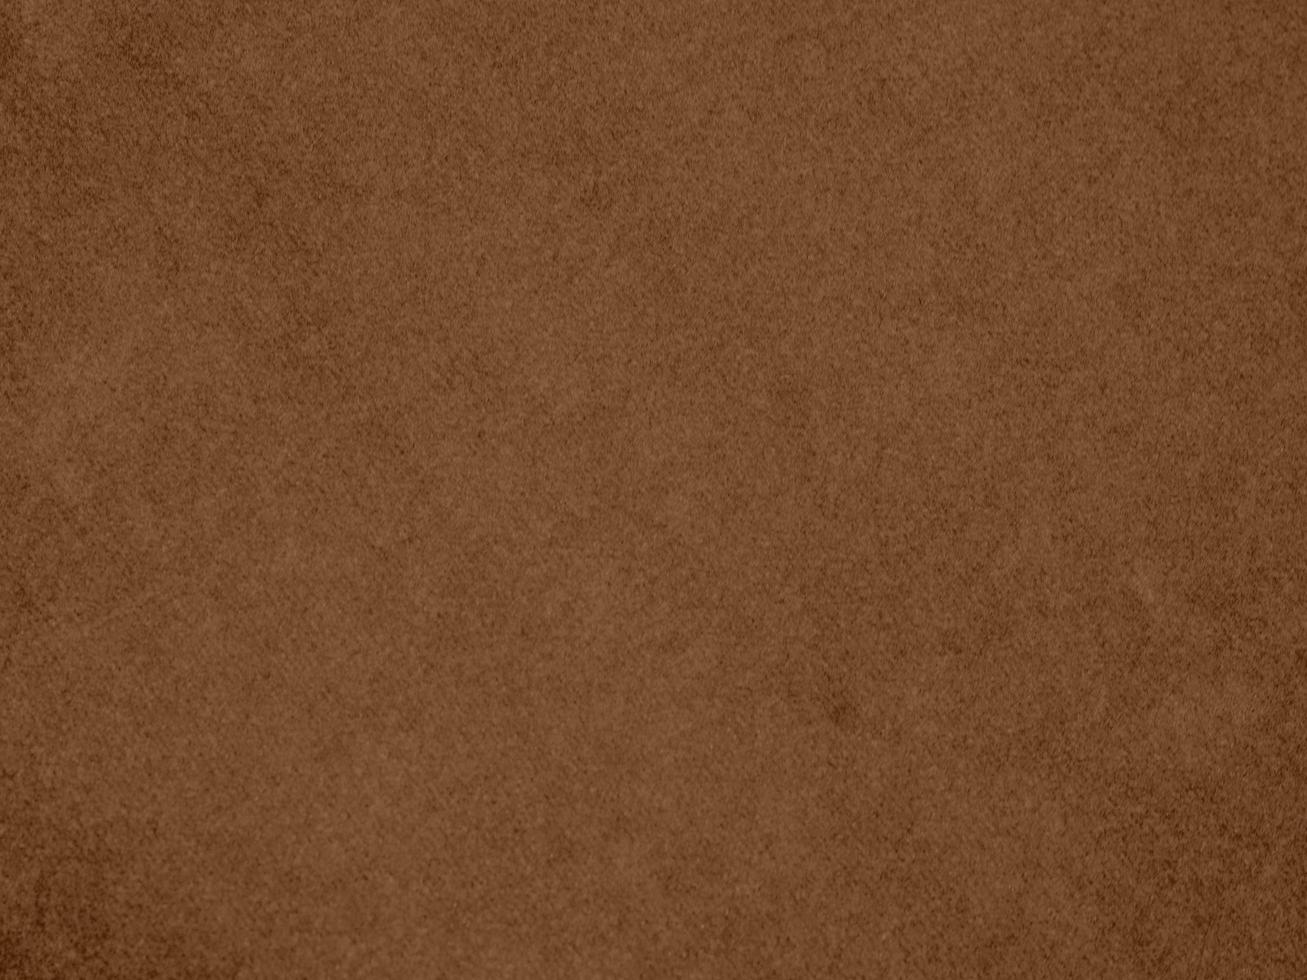 textura de tela de terciopelo de color marrón utilizada como fondo. fondo de tela marrón vacío de material textil suave y liso. hay espacio para el texto. foto